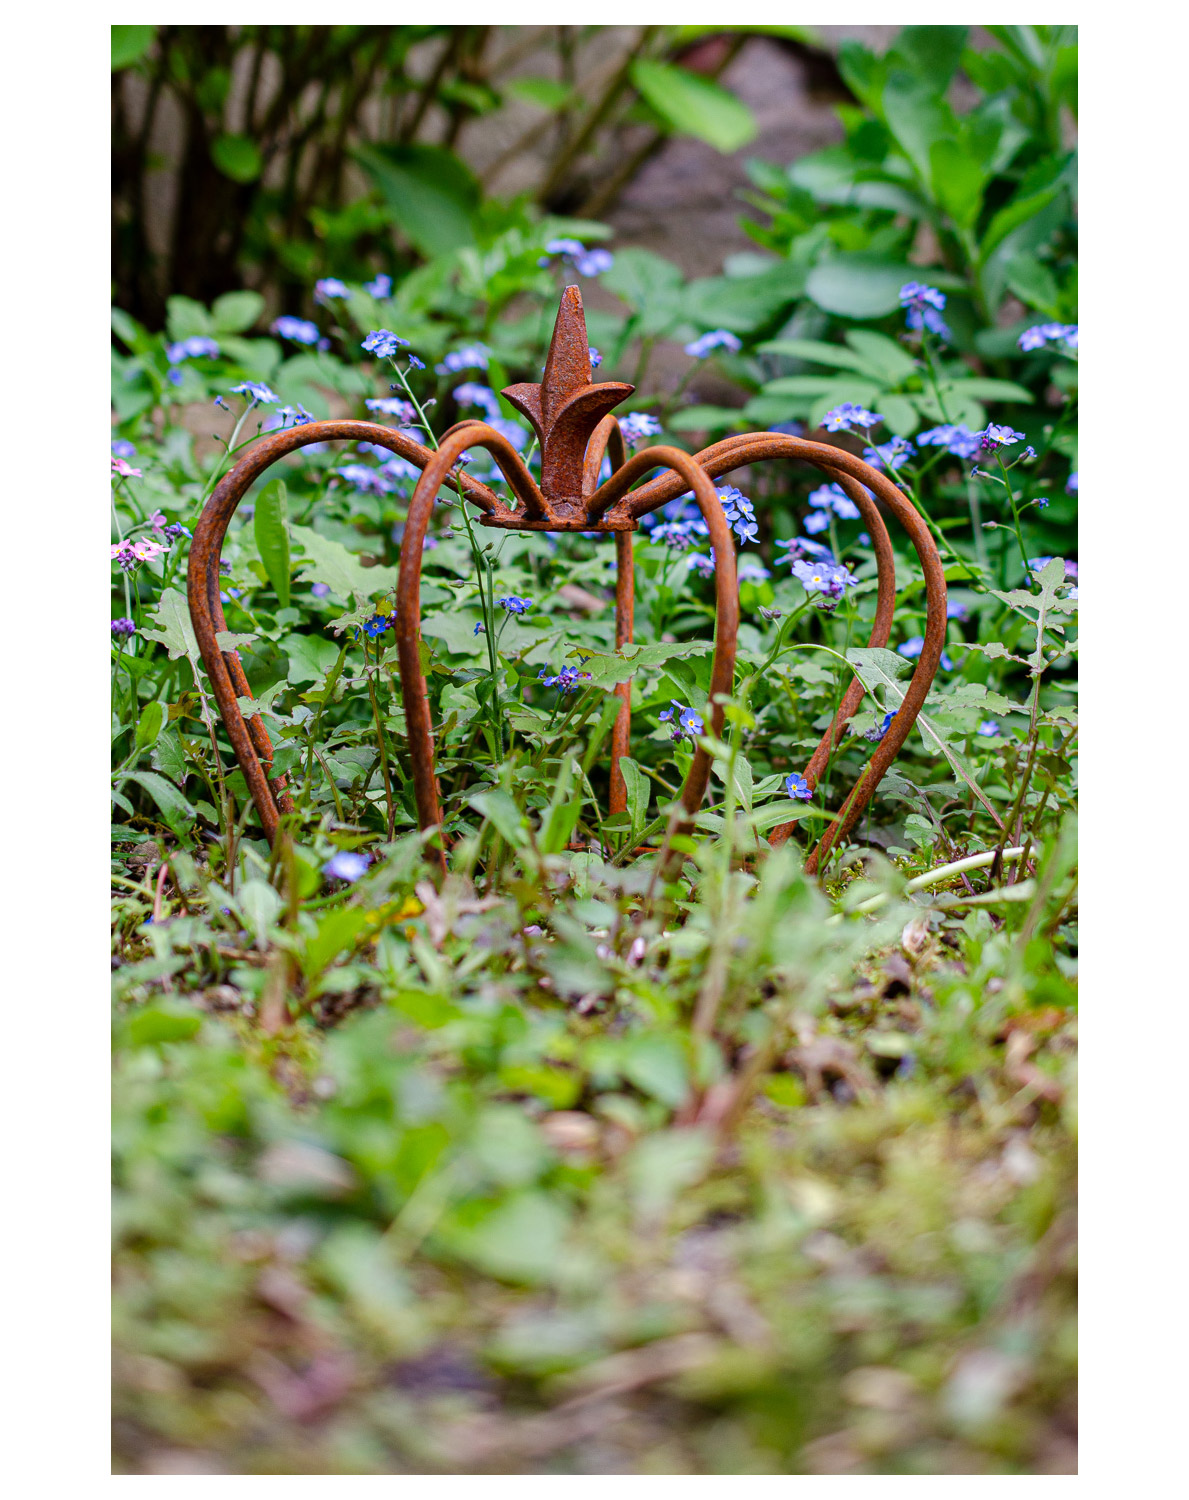 Gartendeko Eisen Schön Crown Iron Lily Garden Decoration Rust Antique Style 24cm